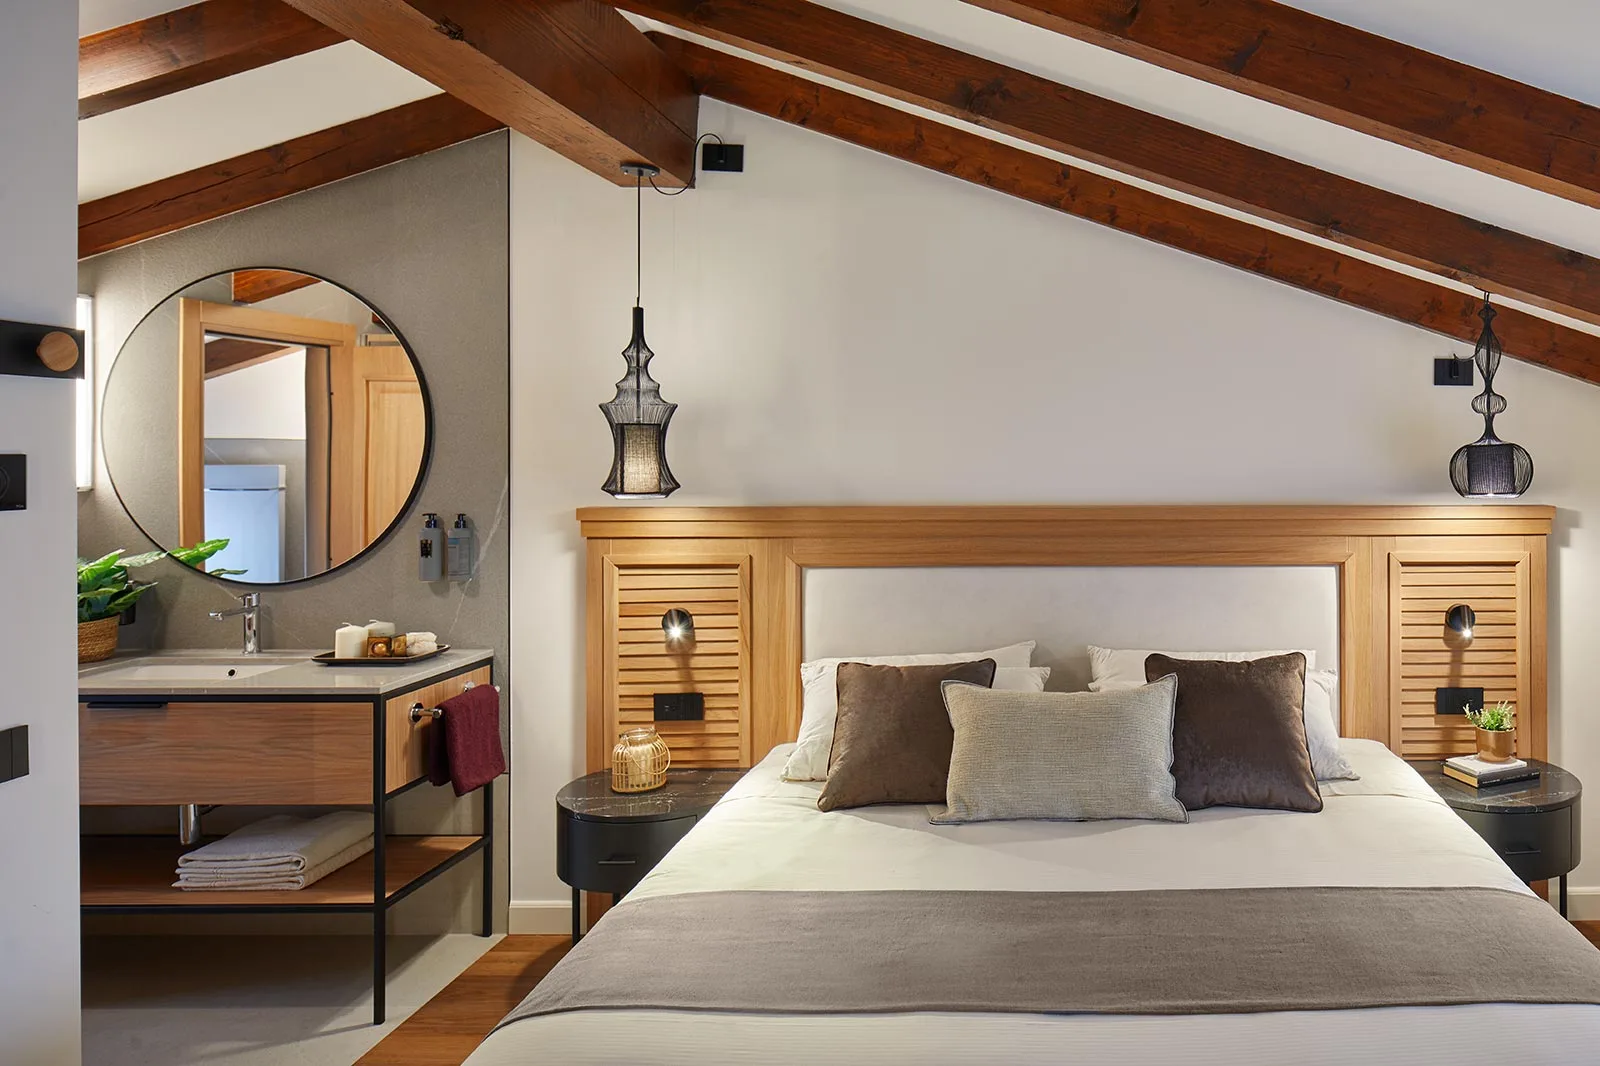 arredamento hotel rustico moderno camera standard legno